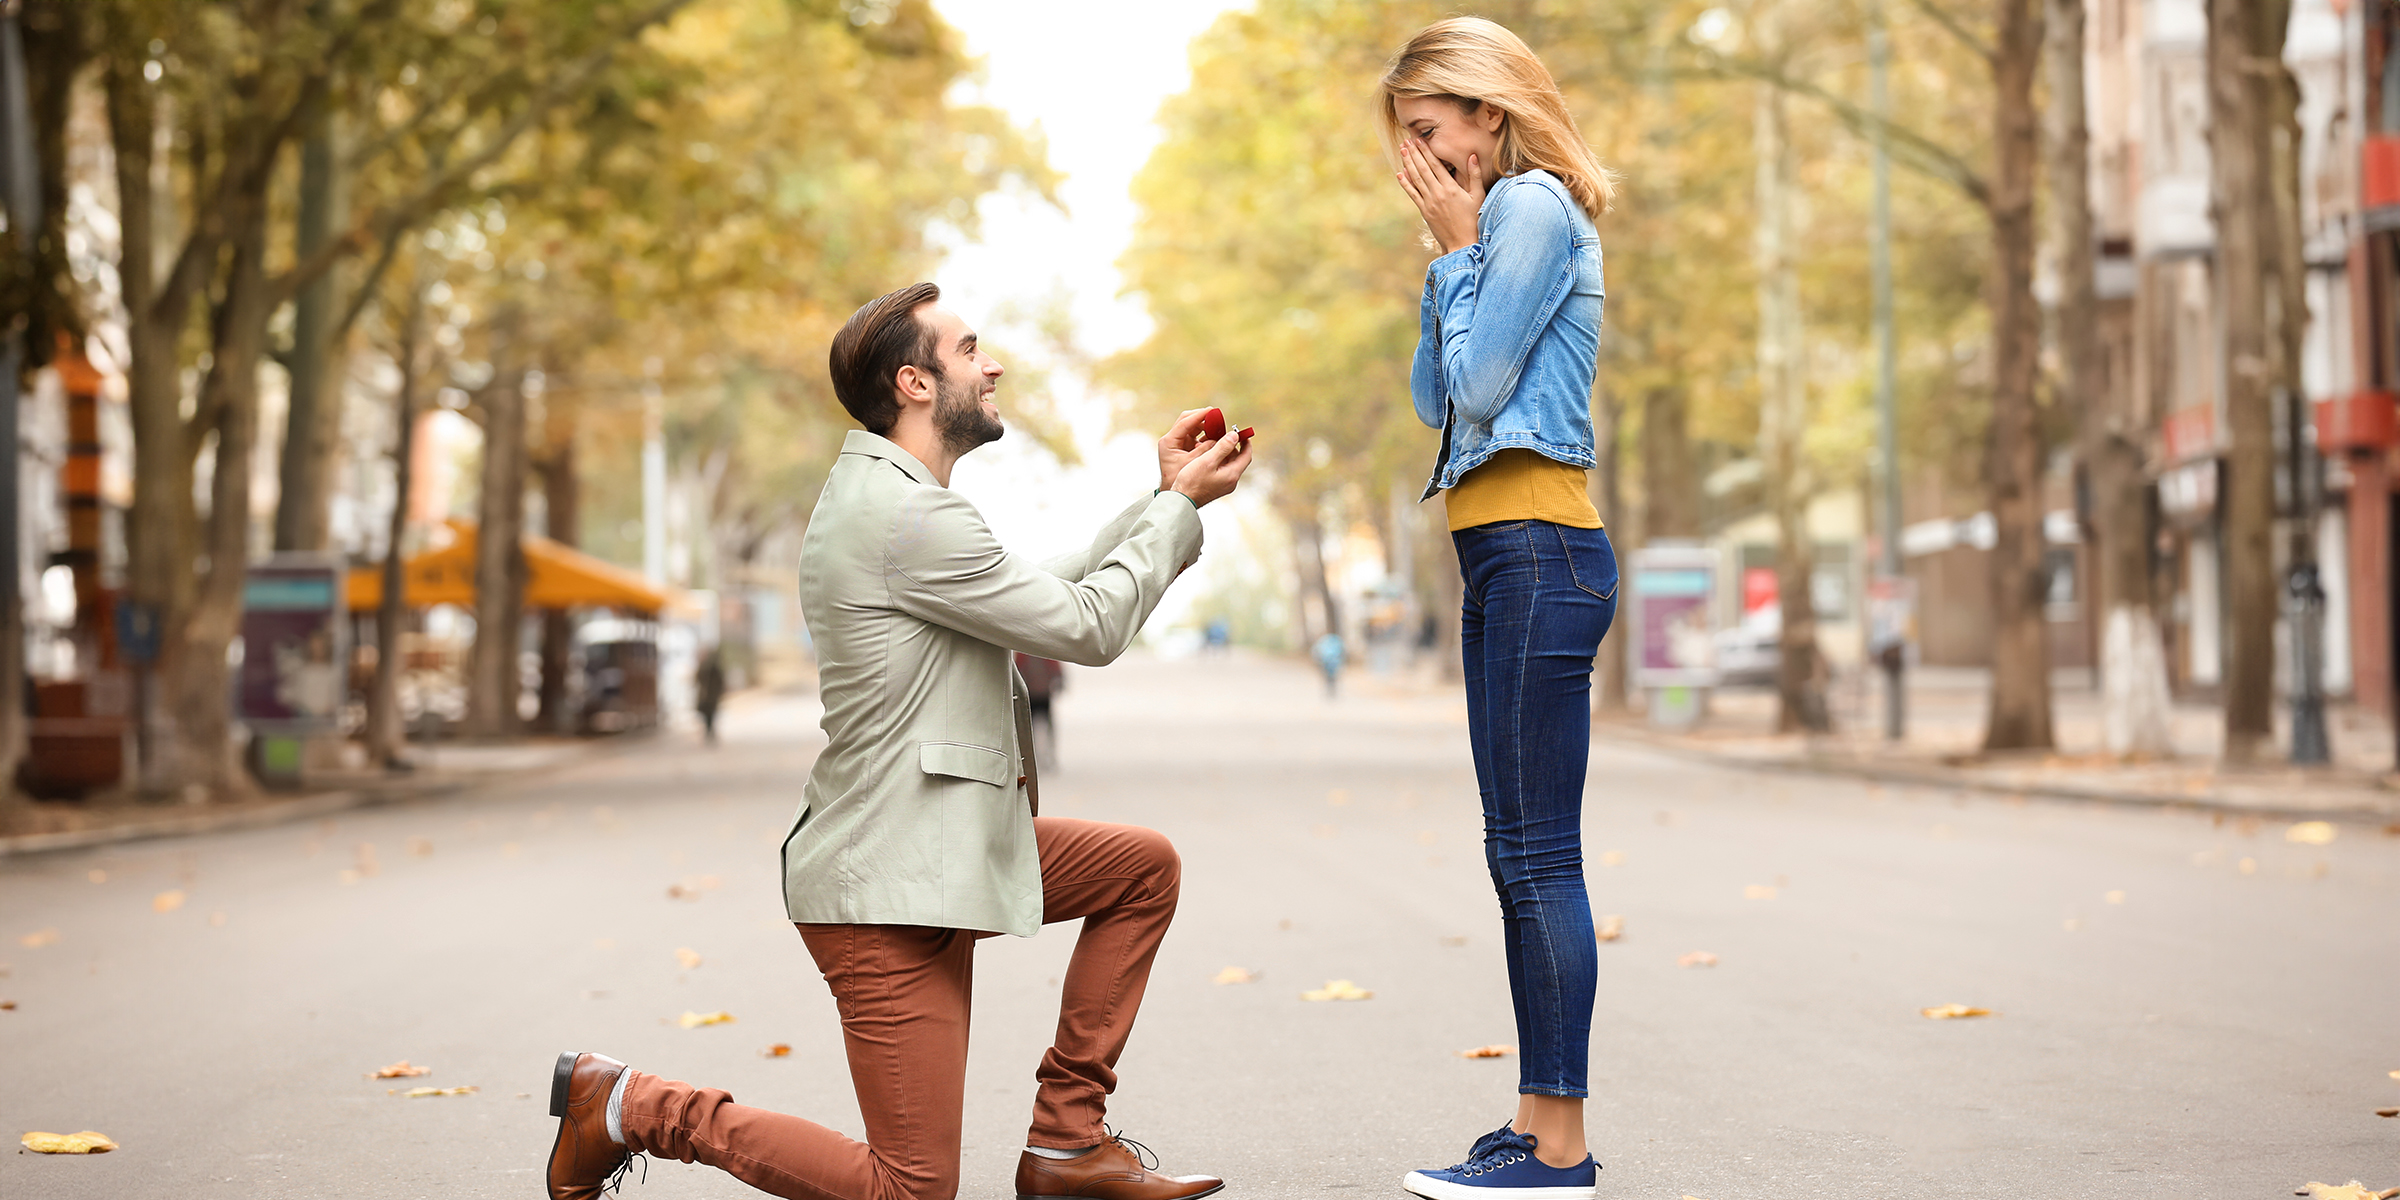 Ein Mann macht einer Frau einen Heiratsantrag | Quelle: Shutterstock